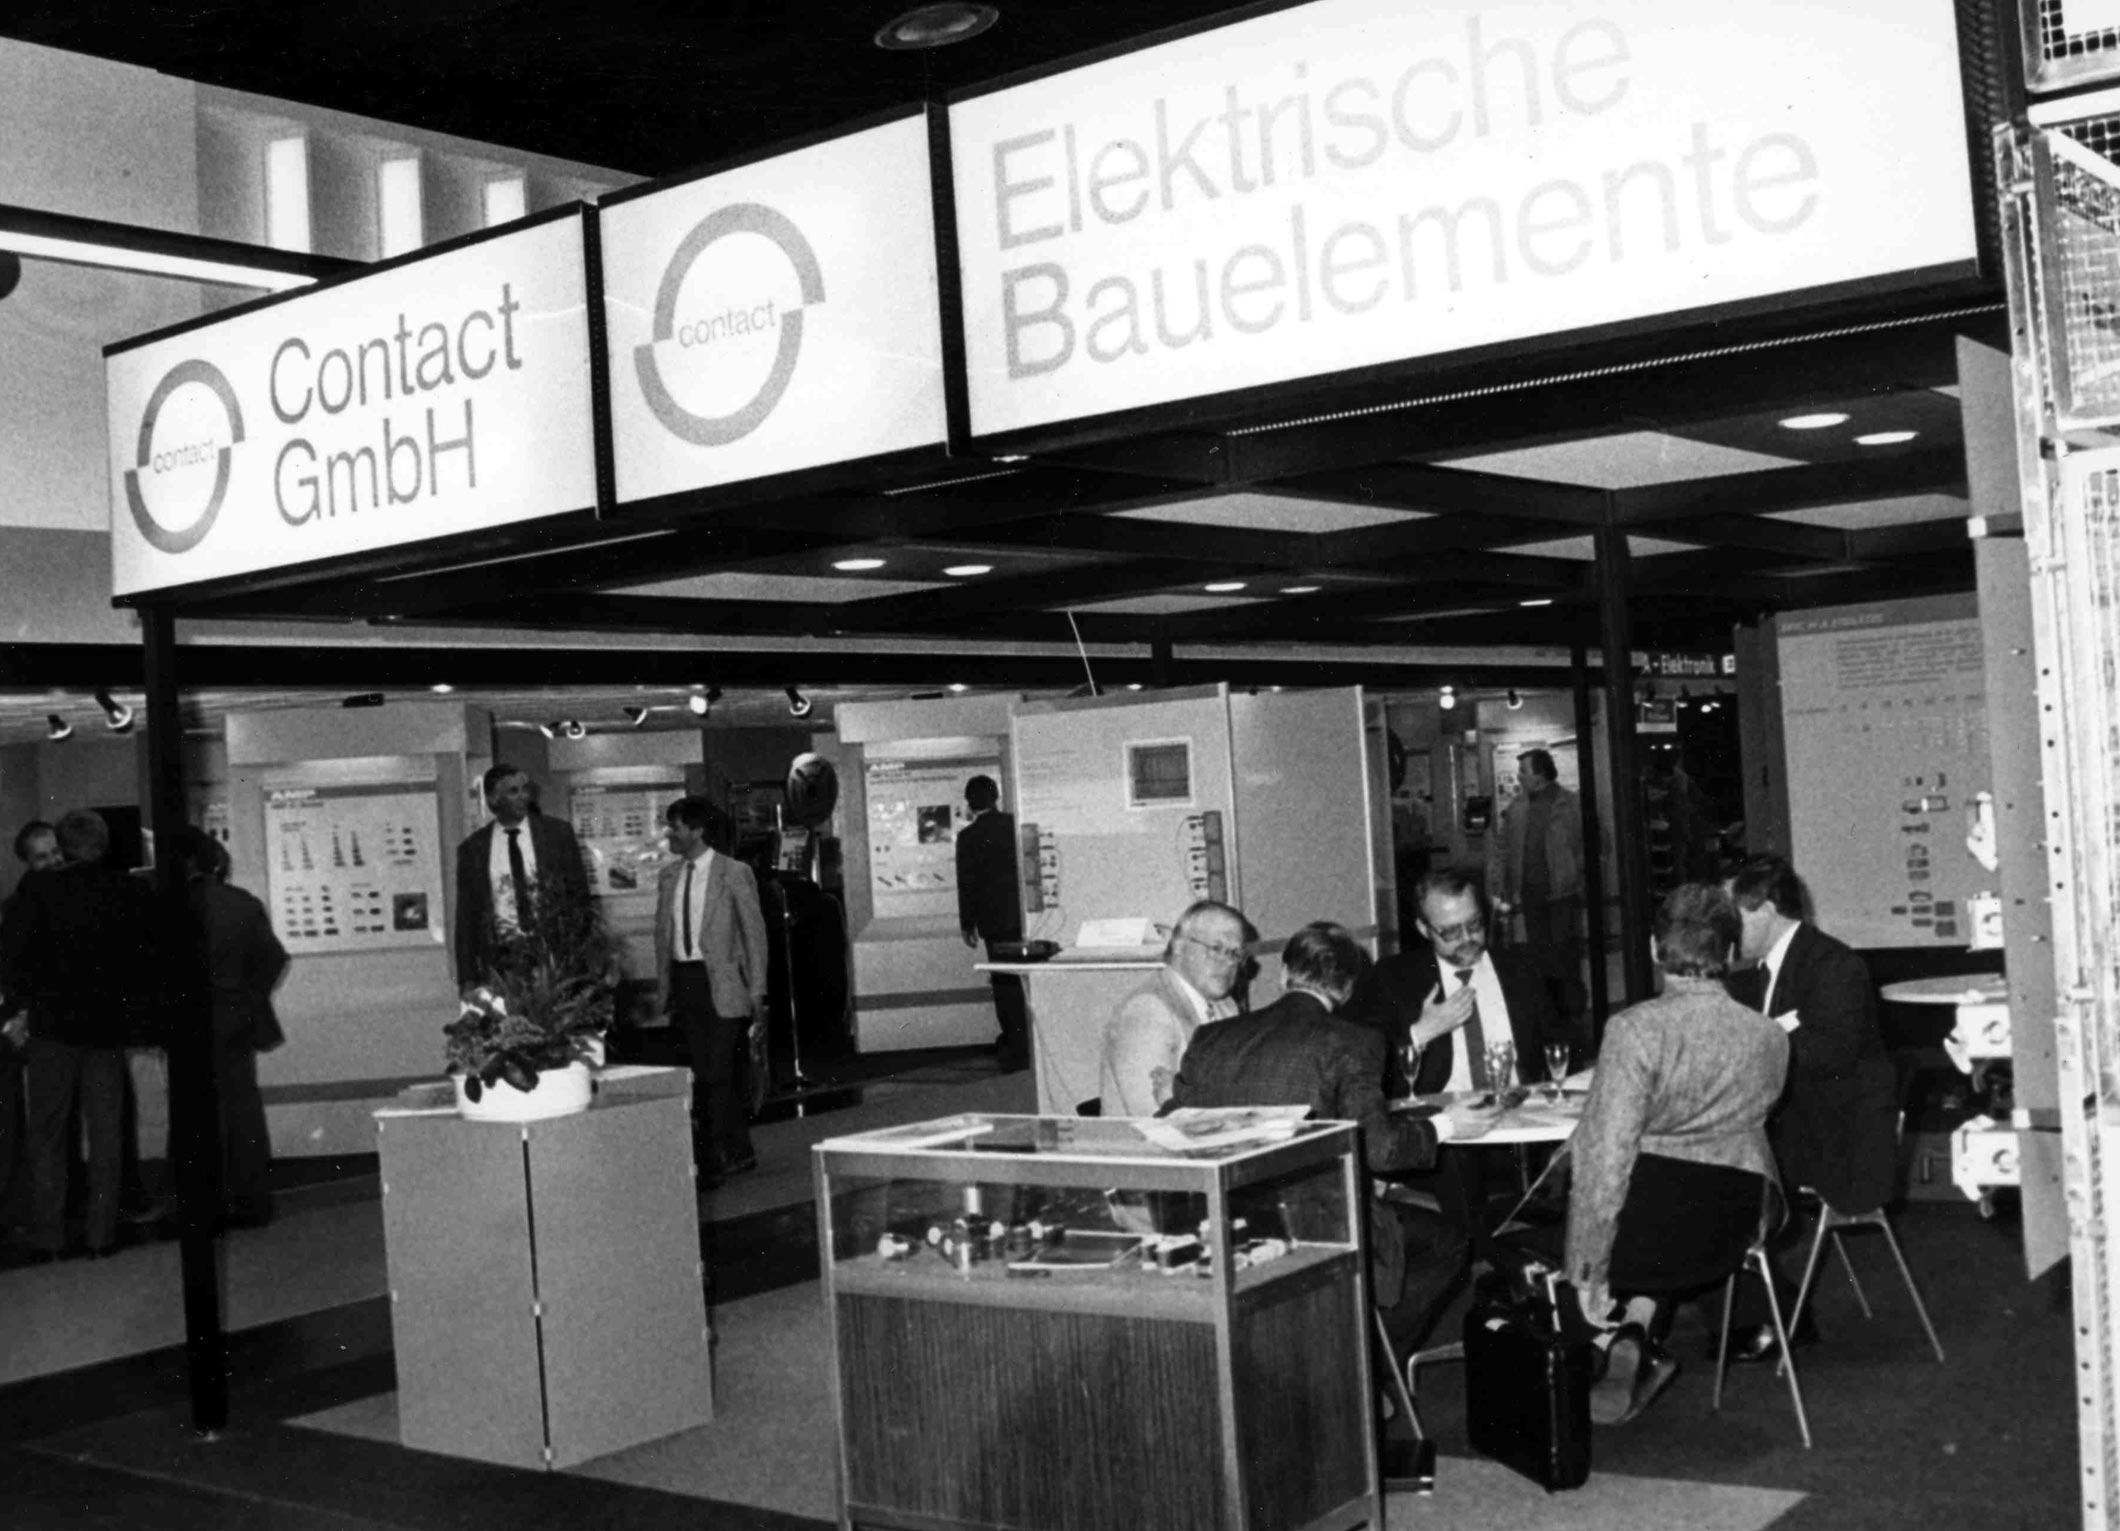 Contact GmbH Elektrische Bauelemente